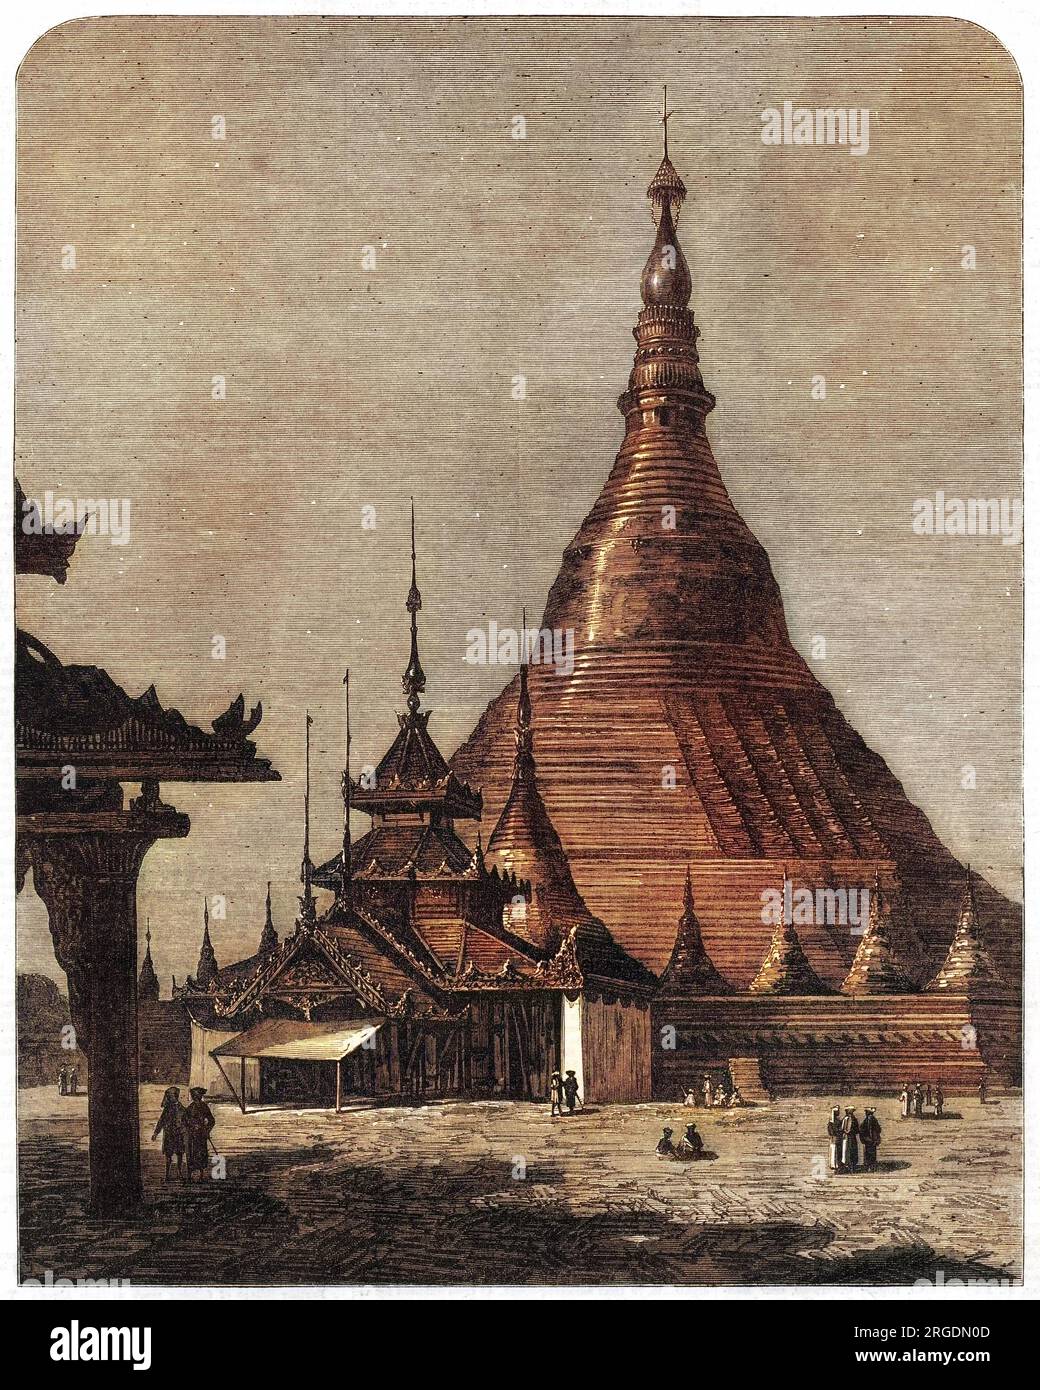 La Pagode Shweidagon à Yangon, Birmanie (Myanmar), officiellement appelée Shweidago Zedi Daw et également connue sous le nom de Pagode d'Or, ou la Grande Pagode Dagon. La structure dorée tourne à 99 mètres de haut. Banque D'Images